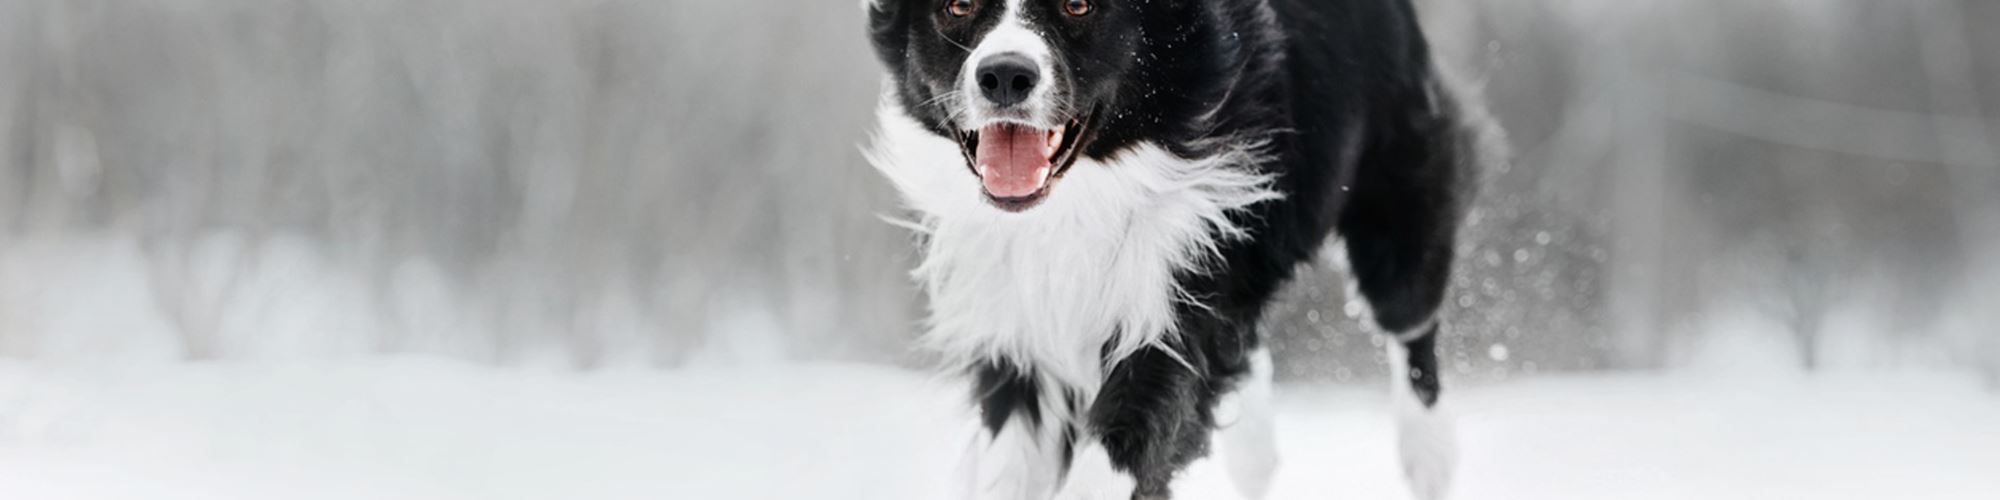 Encontro entre cão e fotógrafa enterrada na neve vence concurso internacional